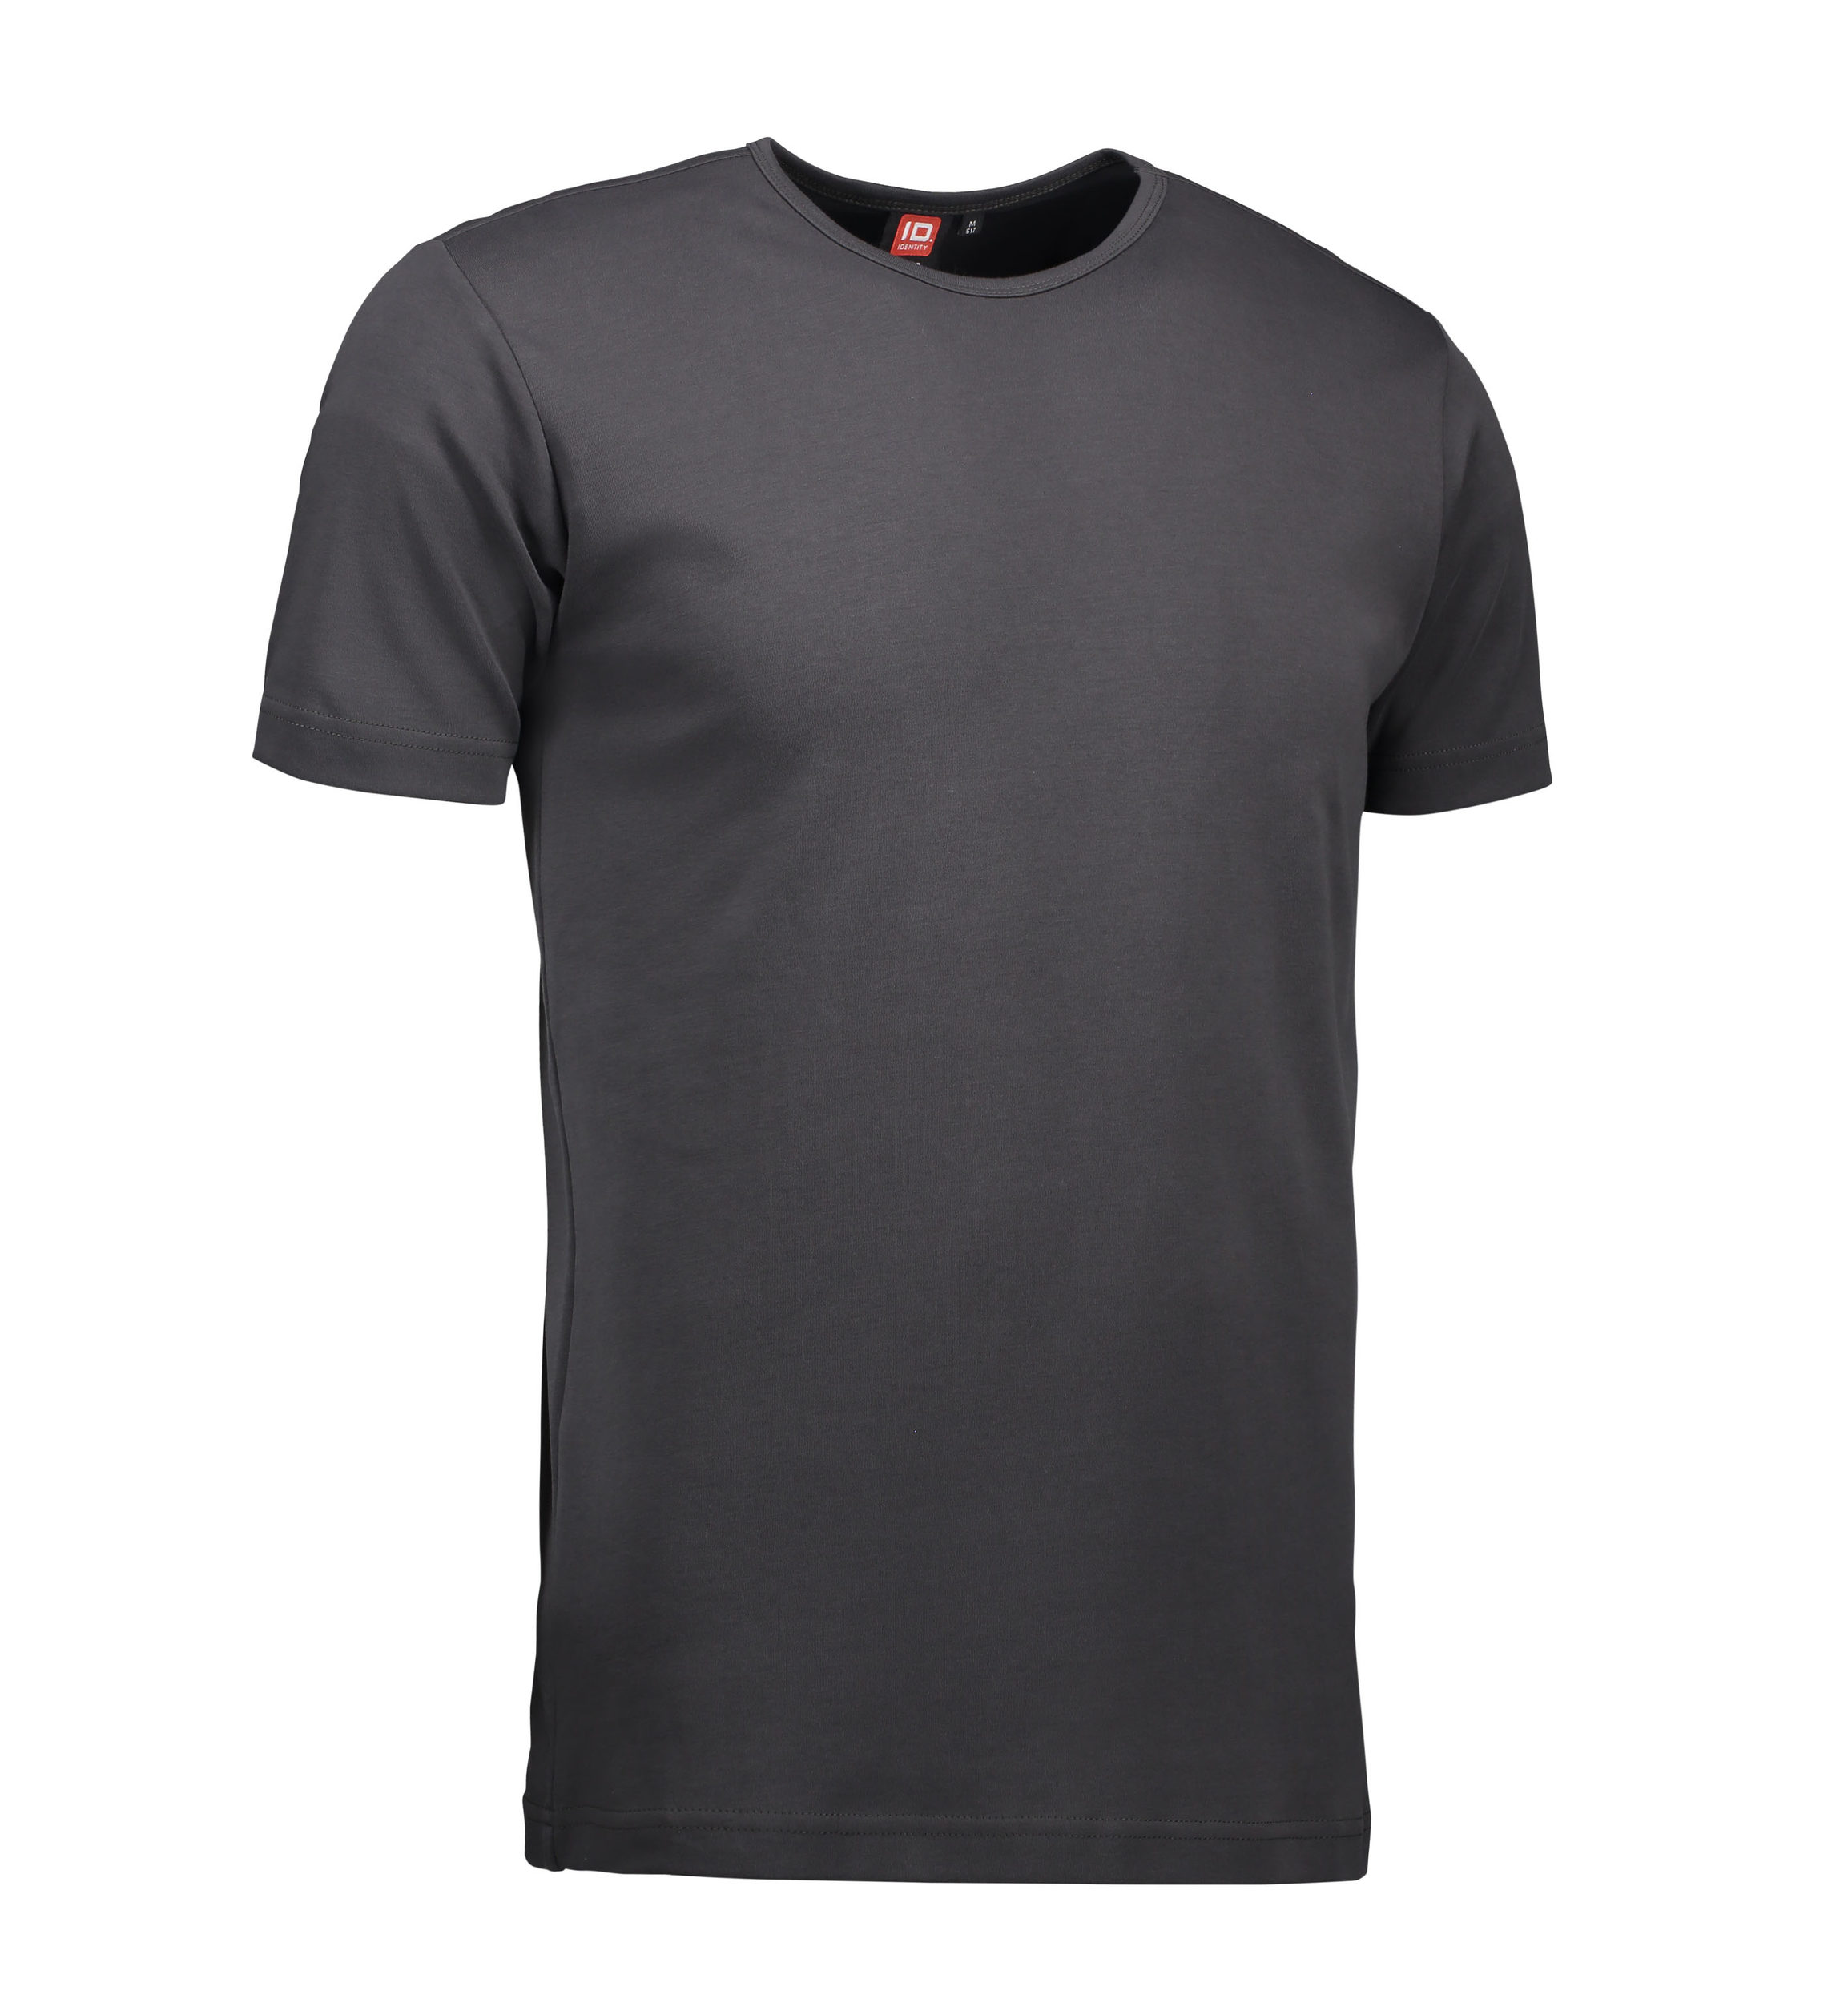 Billede af Koks grå t-shirt med rund hals til mænd - XL hos Sygeplejebutikken.dk